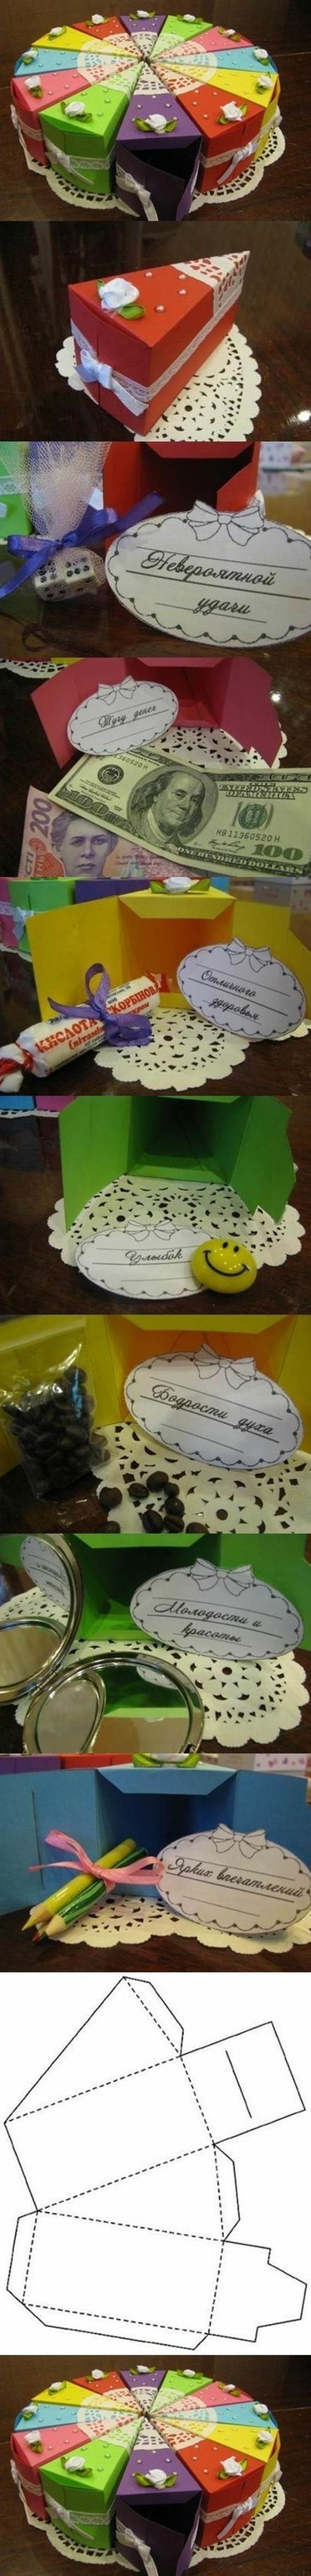 cadeau meilleure amie fait maison, idées cadeaux créatifs, DIY morceaux de gâteau colorés en papier scrapbooking